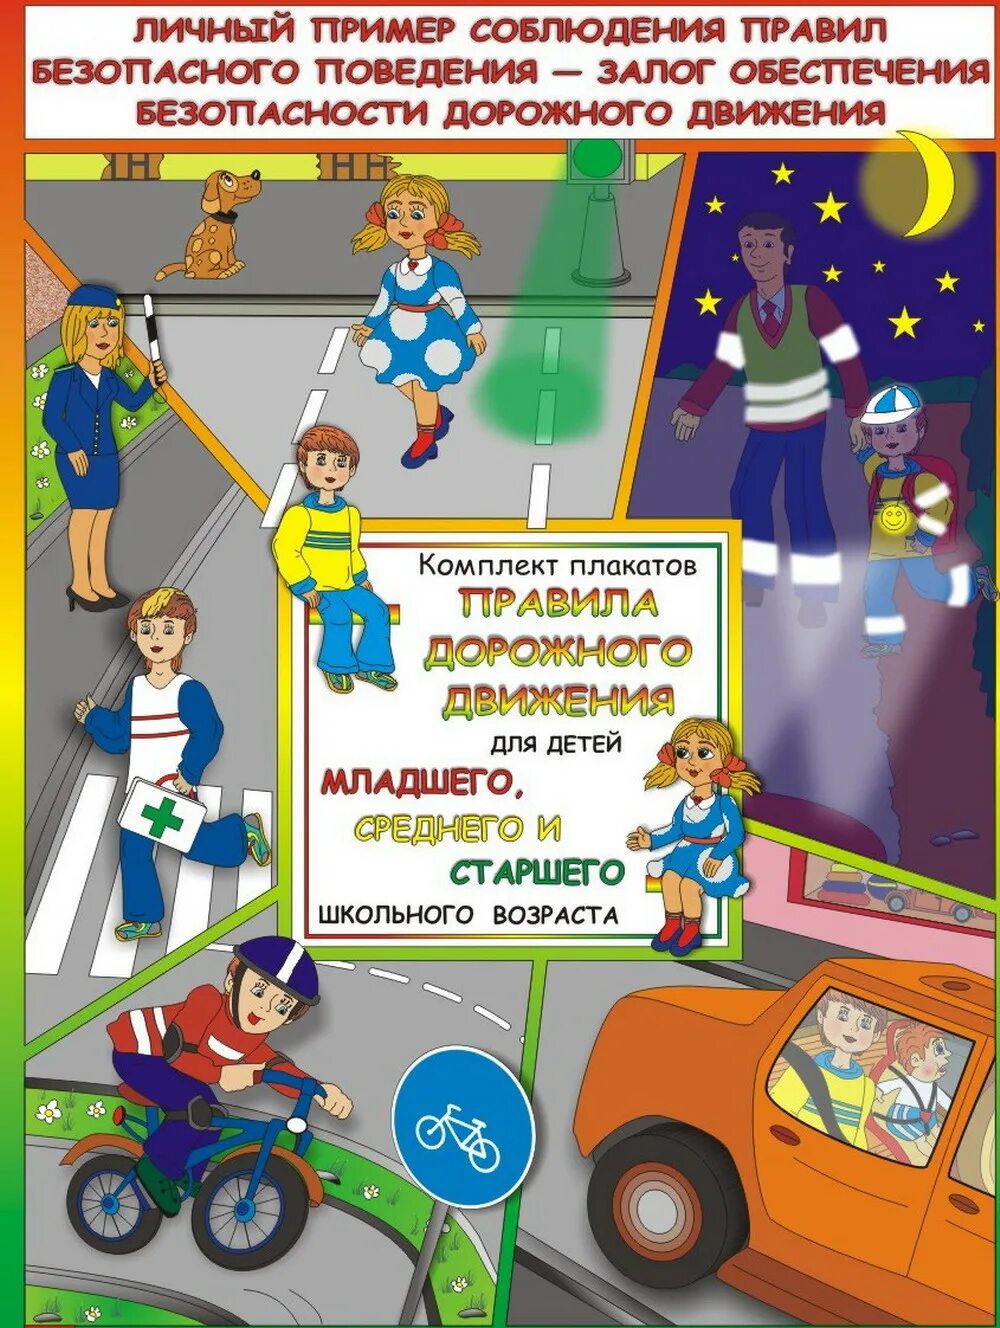 Бдд детям. Дорожное движение для детей. Плакаты по безопасности дорожного движения для детей. Правила дорожного движения для детей. Плакат по правилам дорожного движения.